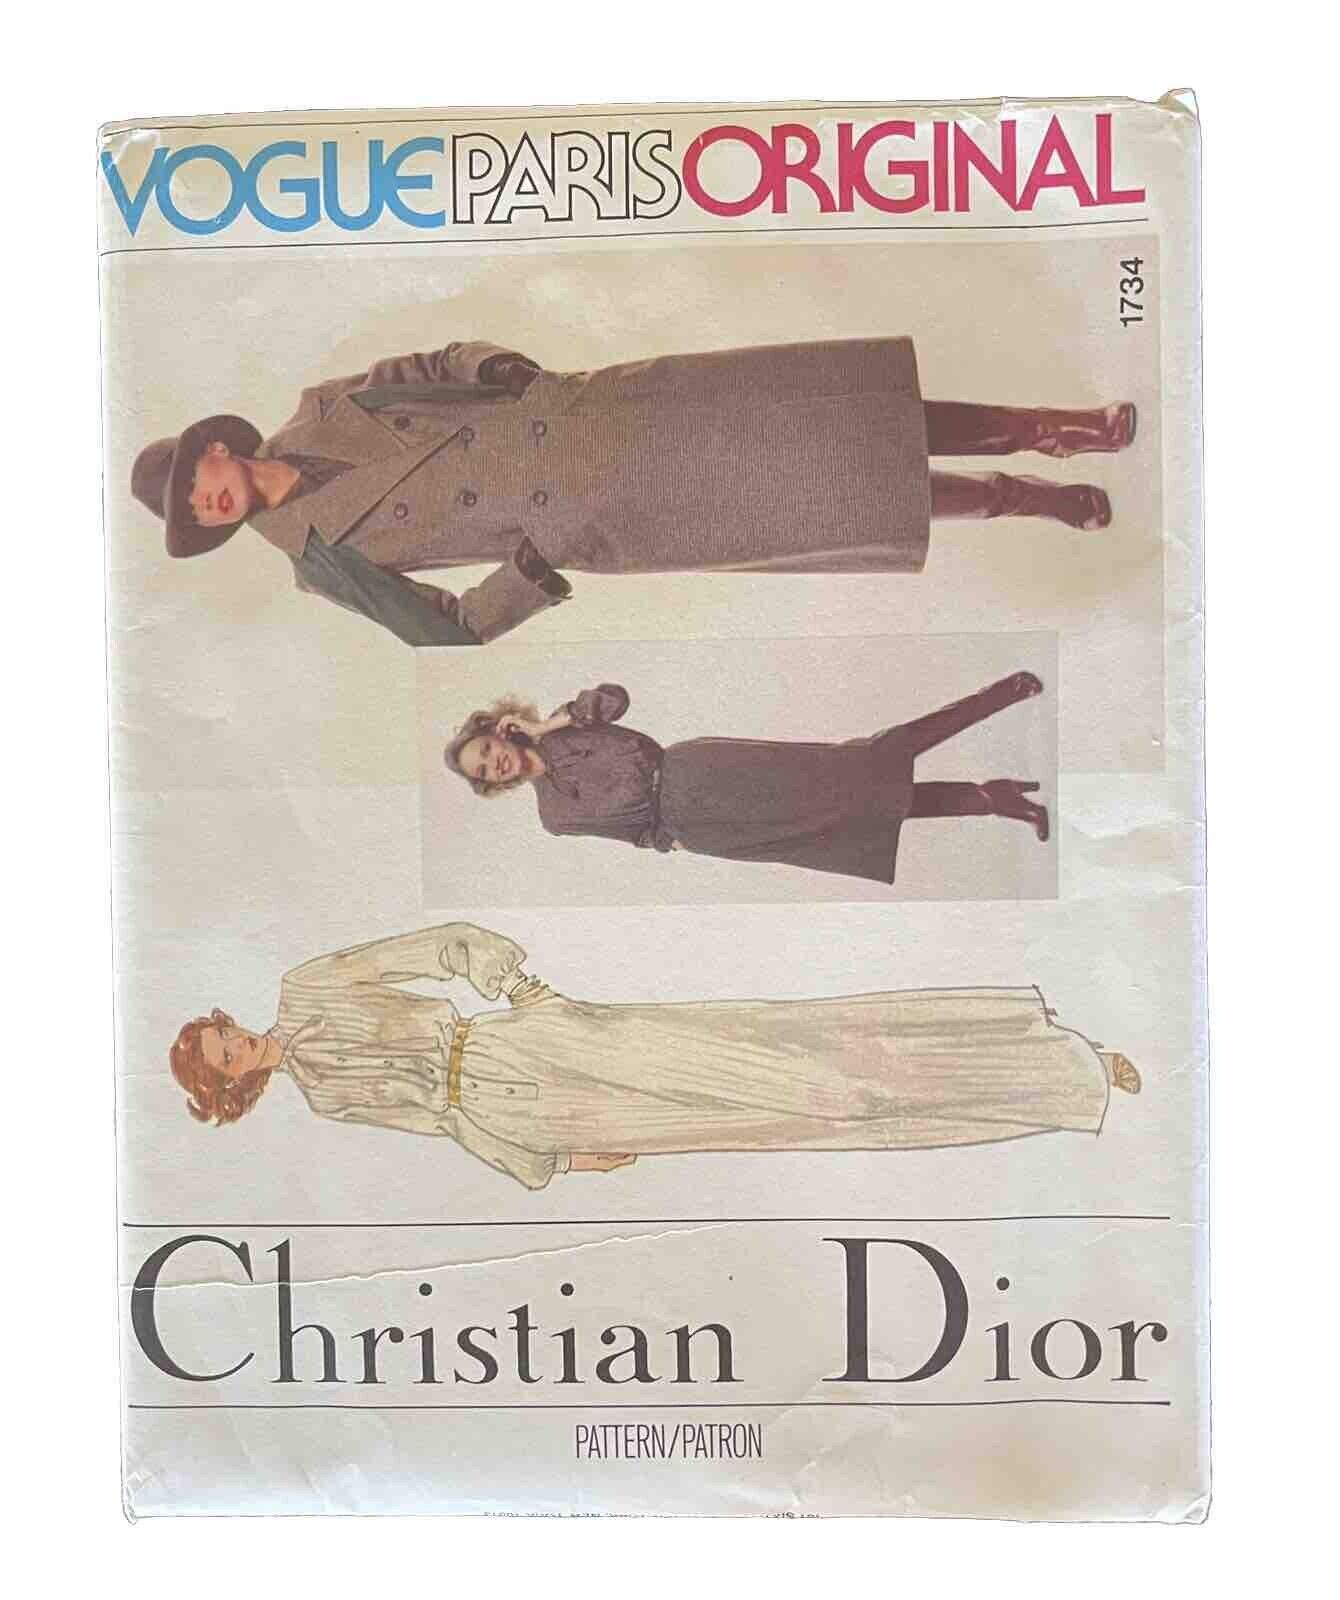 RARE Vintage ORIGINAL Vogue Paris Original Christian Dior Pattern 1734